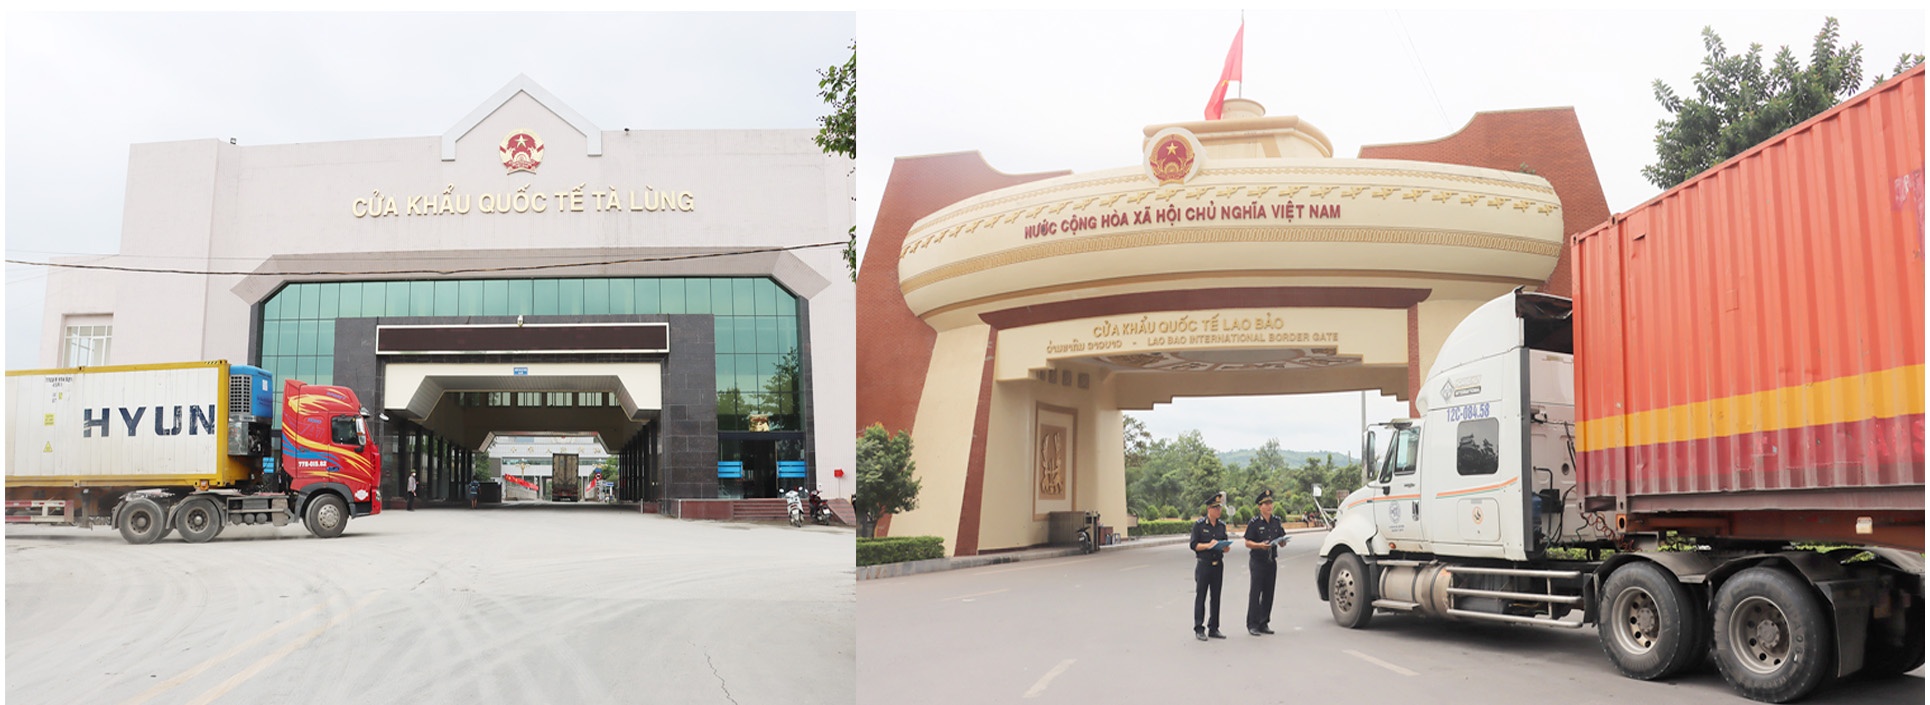 LONGFORM: Tổng cục trưởng Tổng cục Hải quan Nguyễn Văn Cẩn: Xây dựng, phát triển Hải quan Việt Nam trong kỷ nguyên số